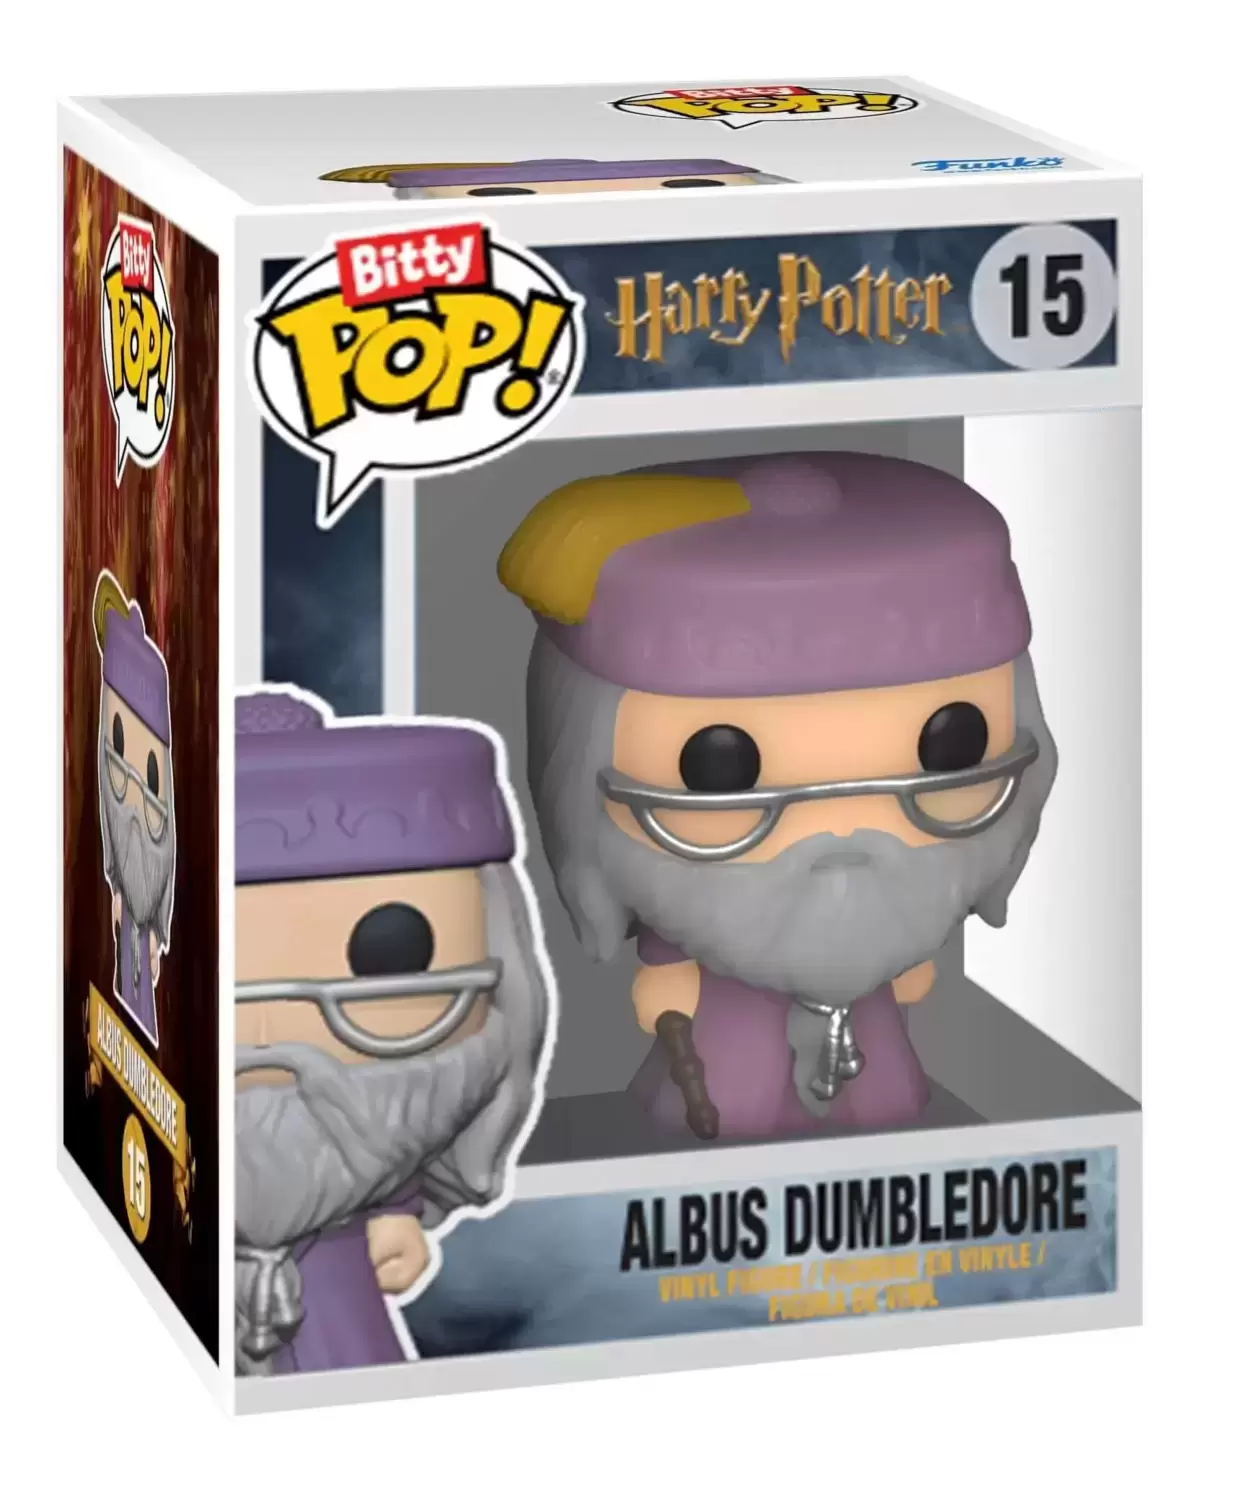 Bitty POP! - Harry Potter - Albus Dumbledore